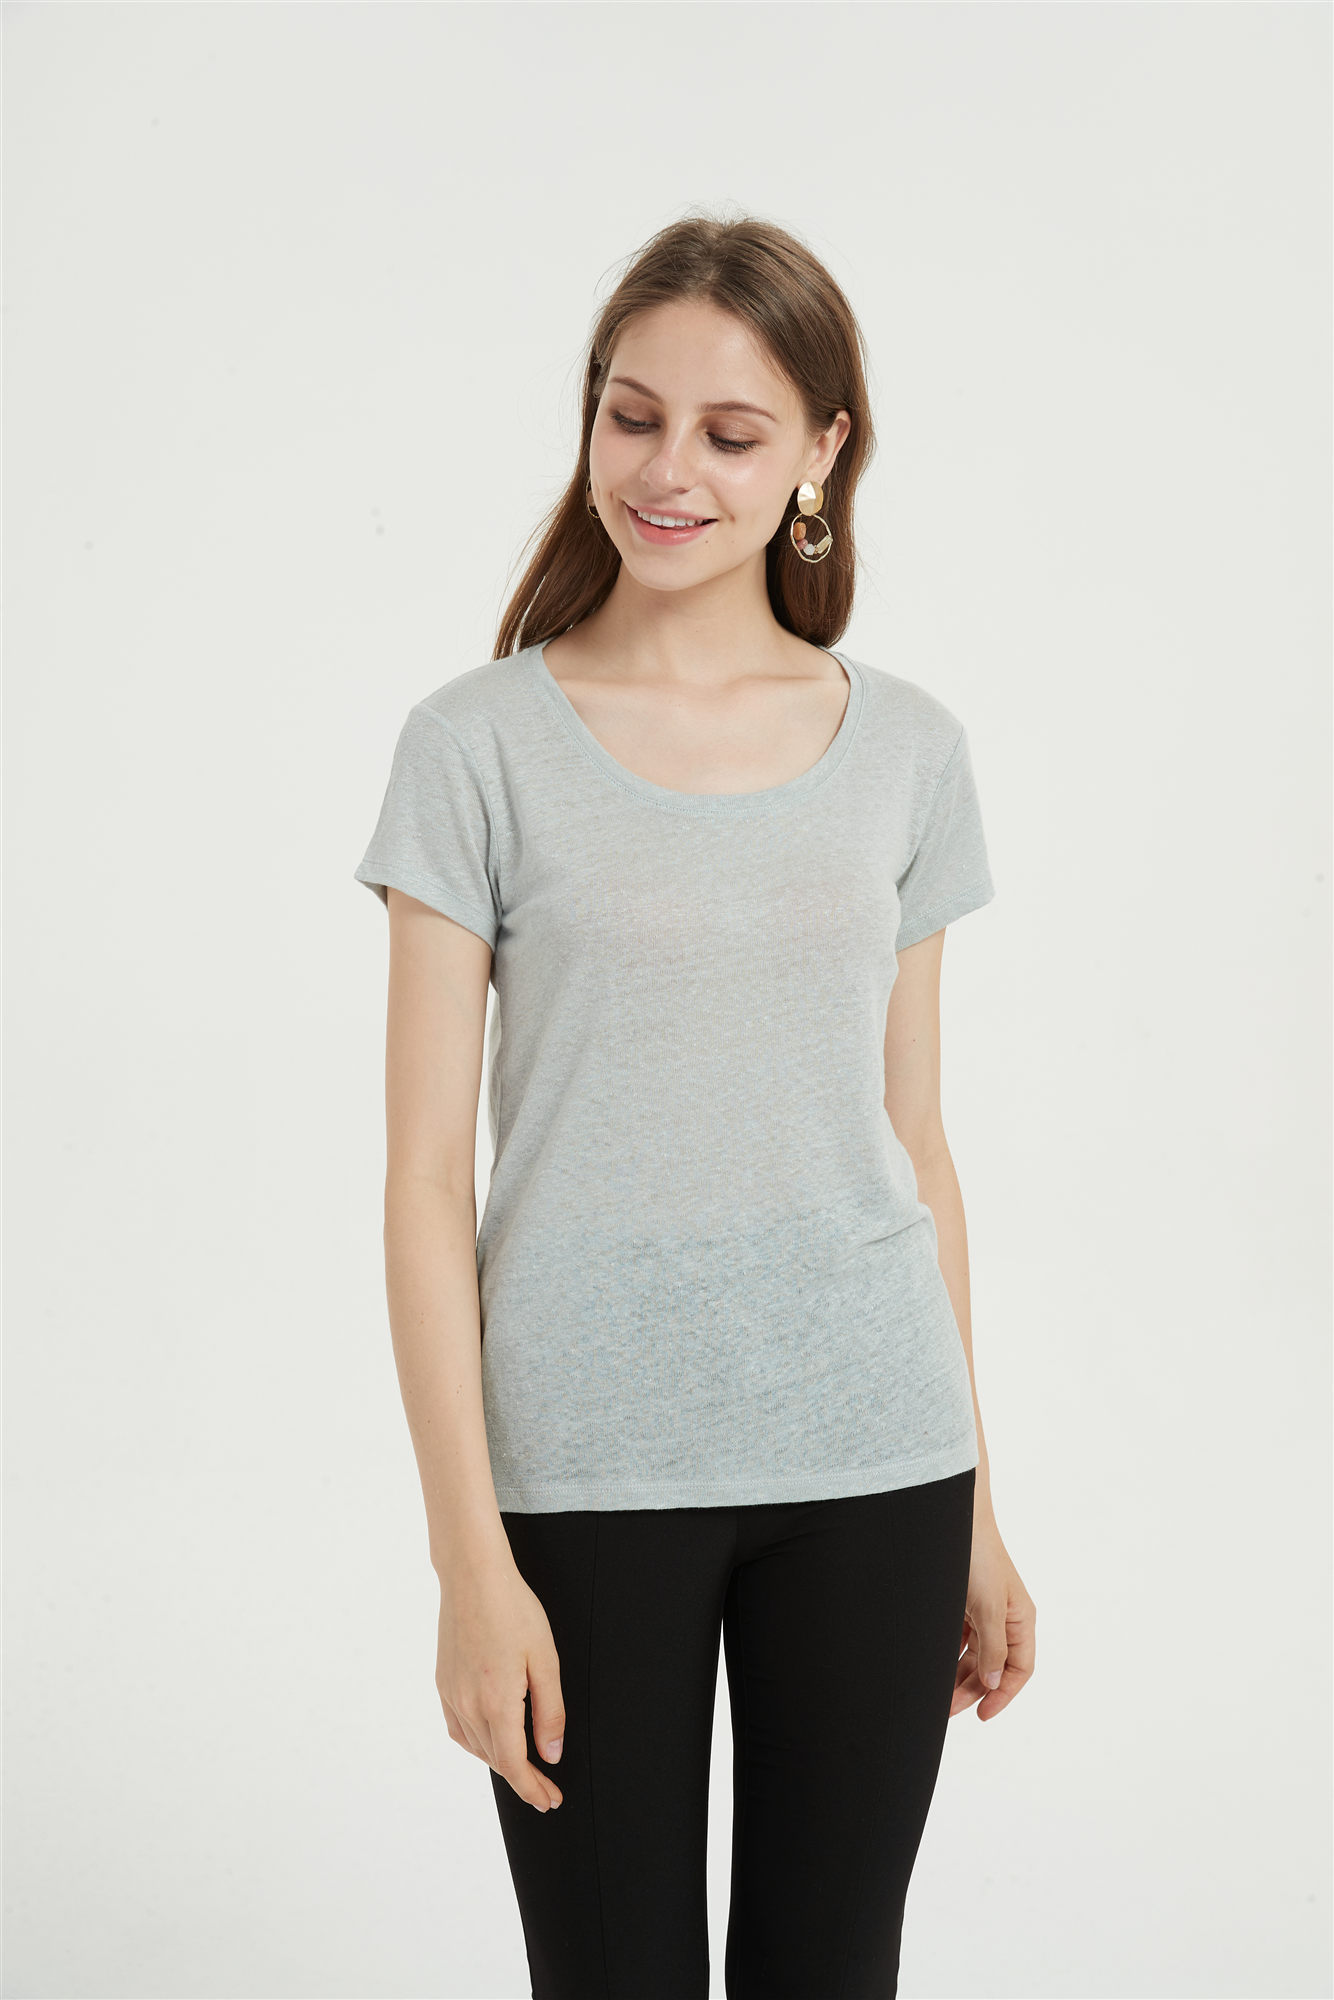 Baumwollmischung Frauen T-Shirt